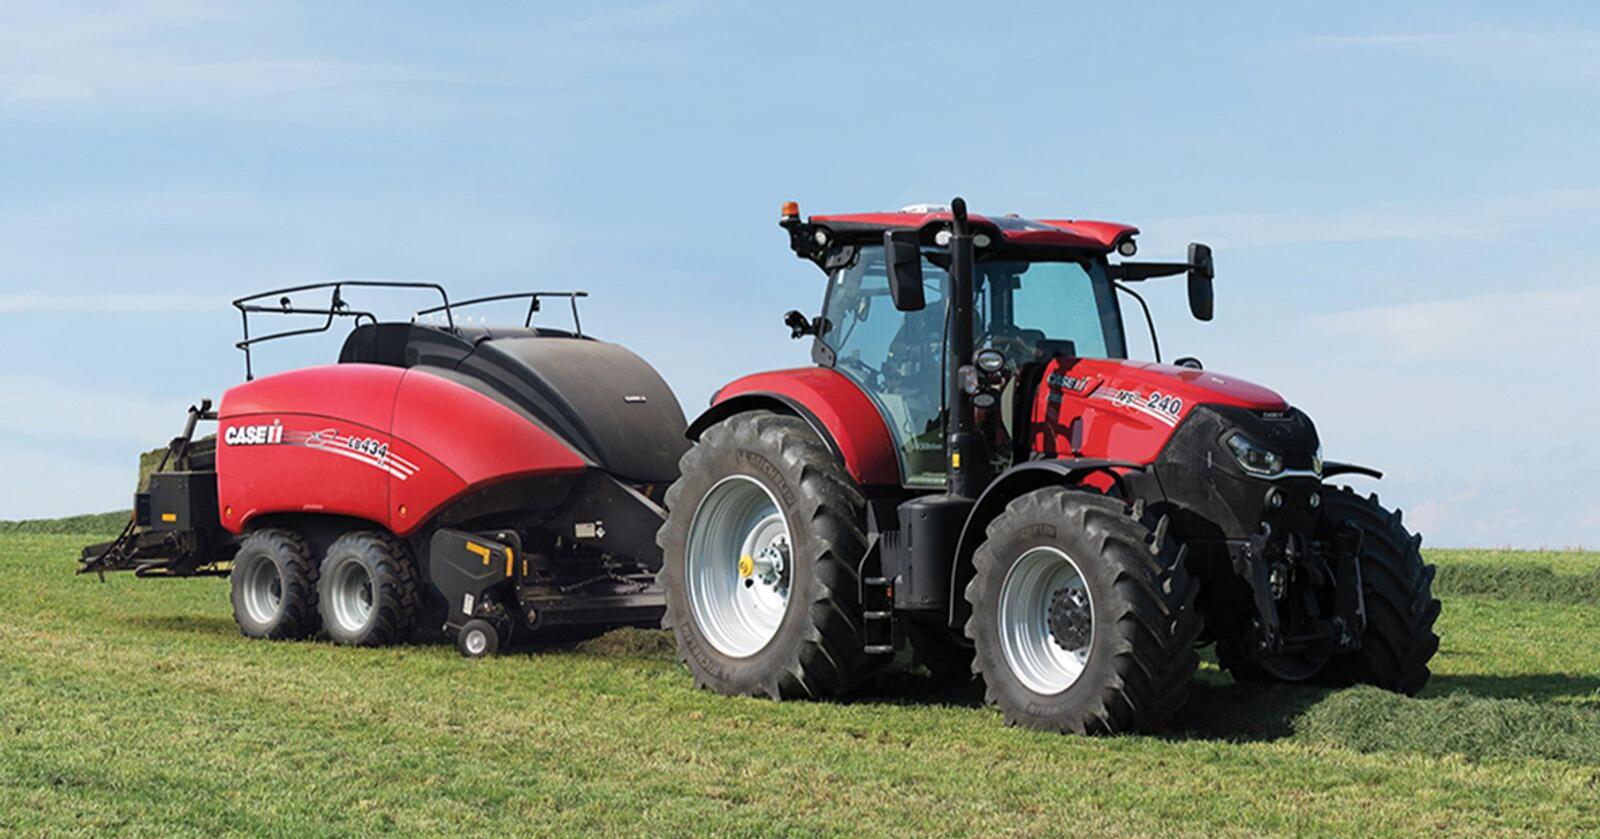 Rødt i tet: Case IH Puma 240 er Danmarks mest solgte traktormodell så langt i 2021